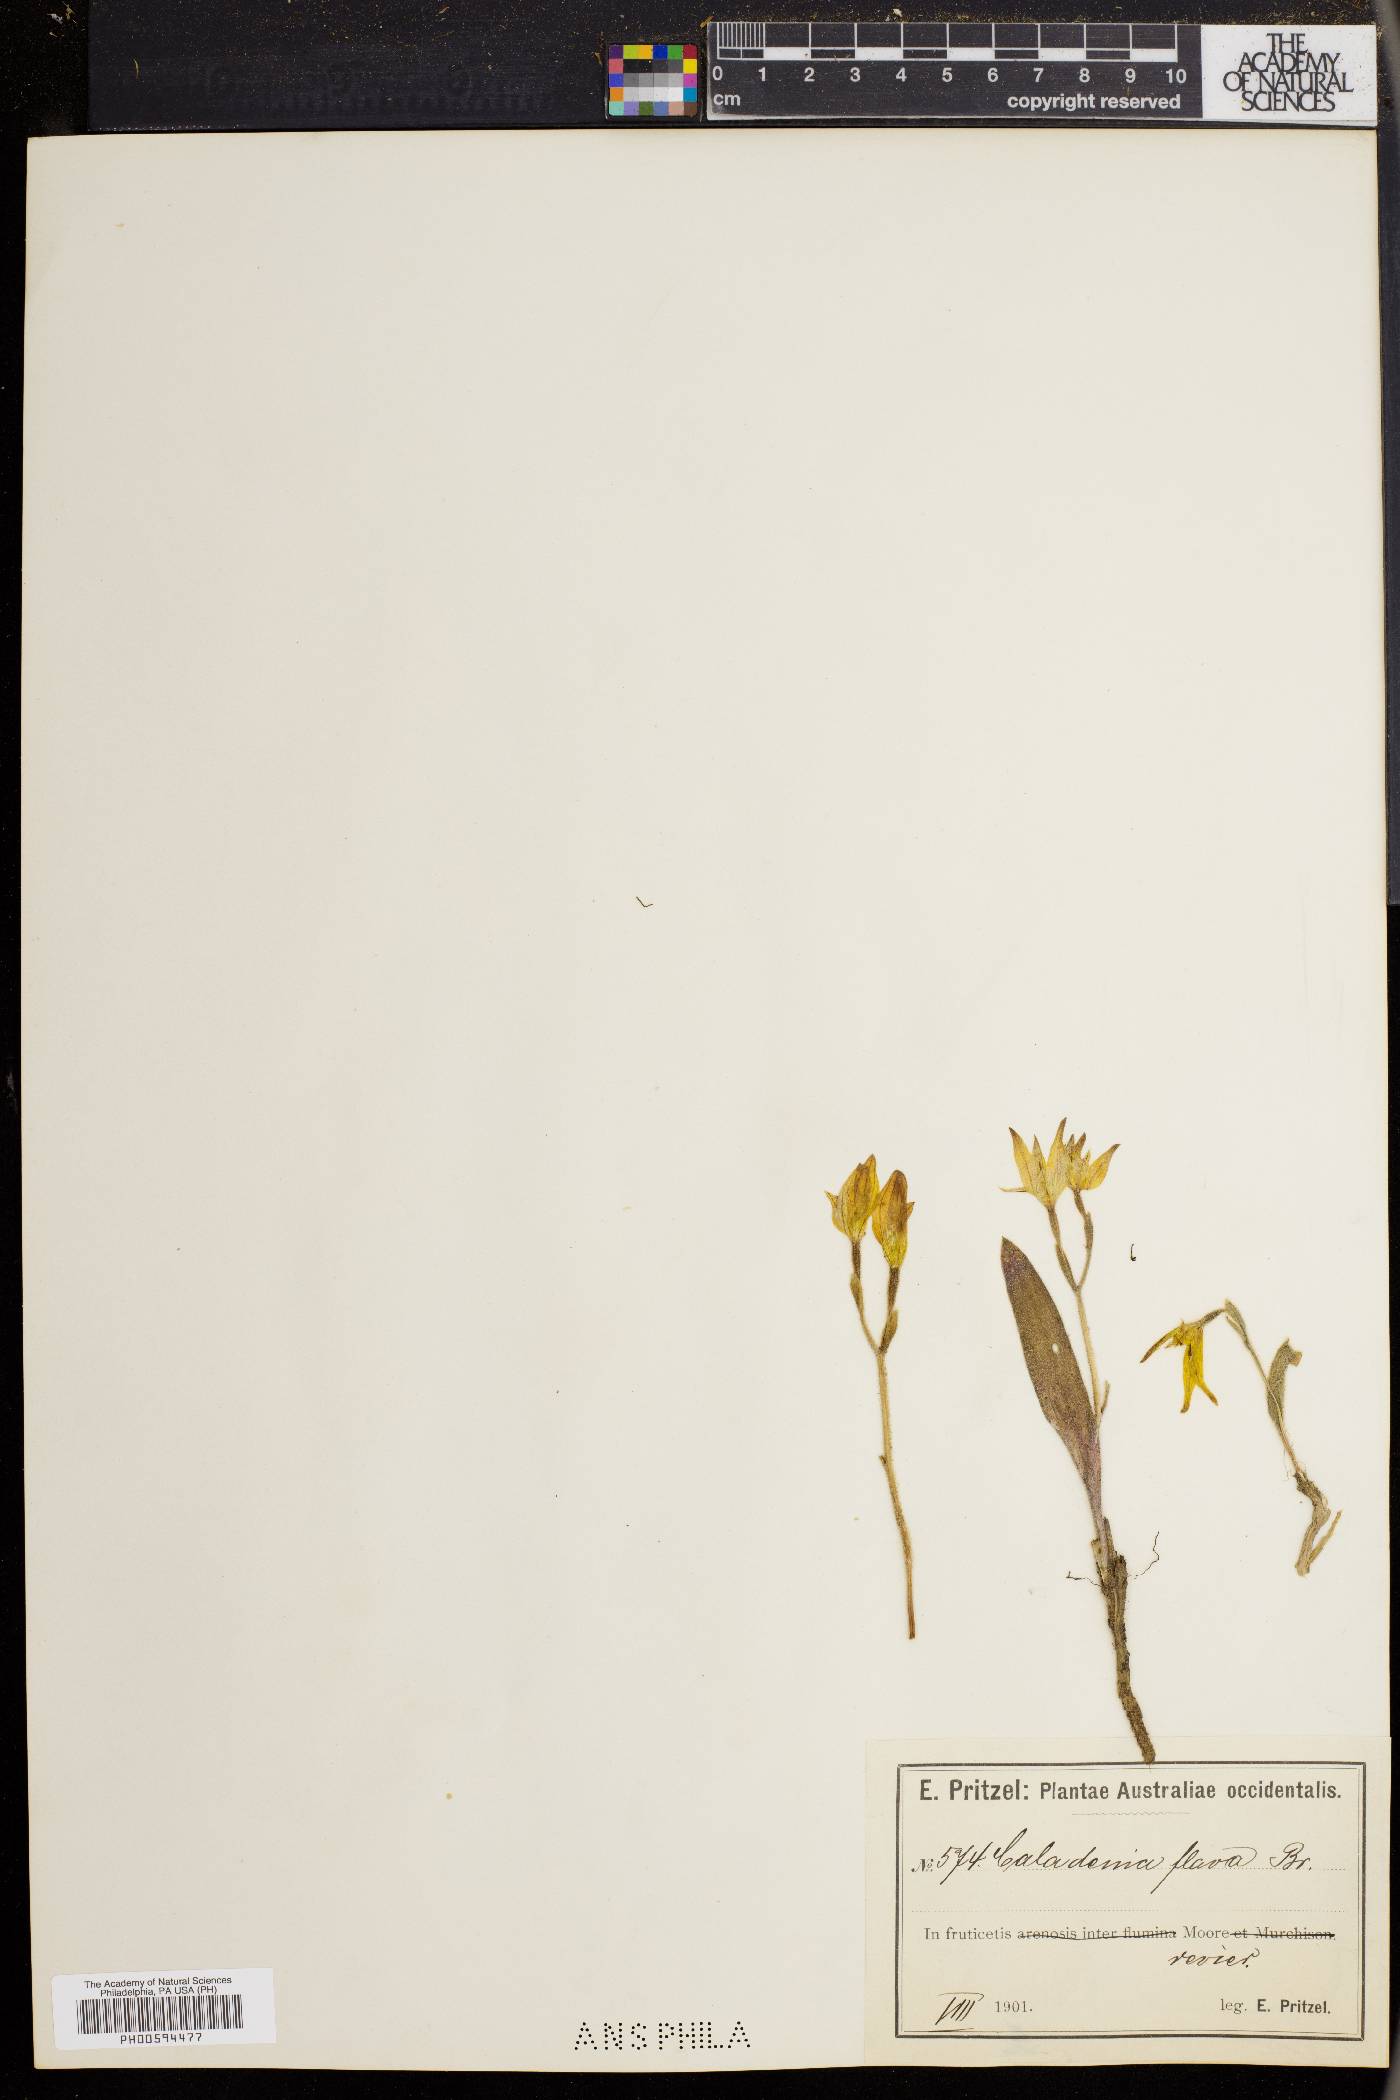 Caladenia flava image